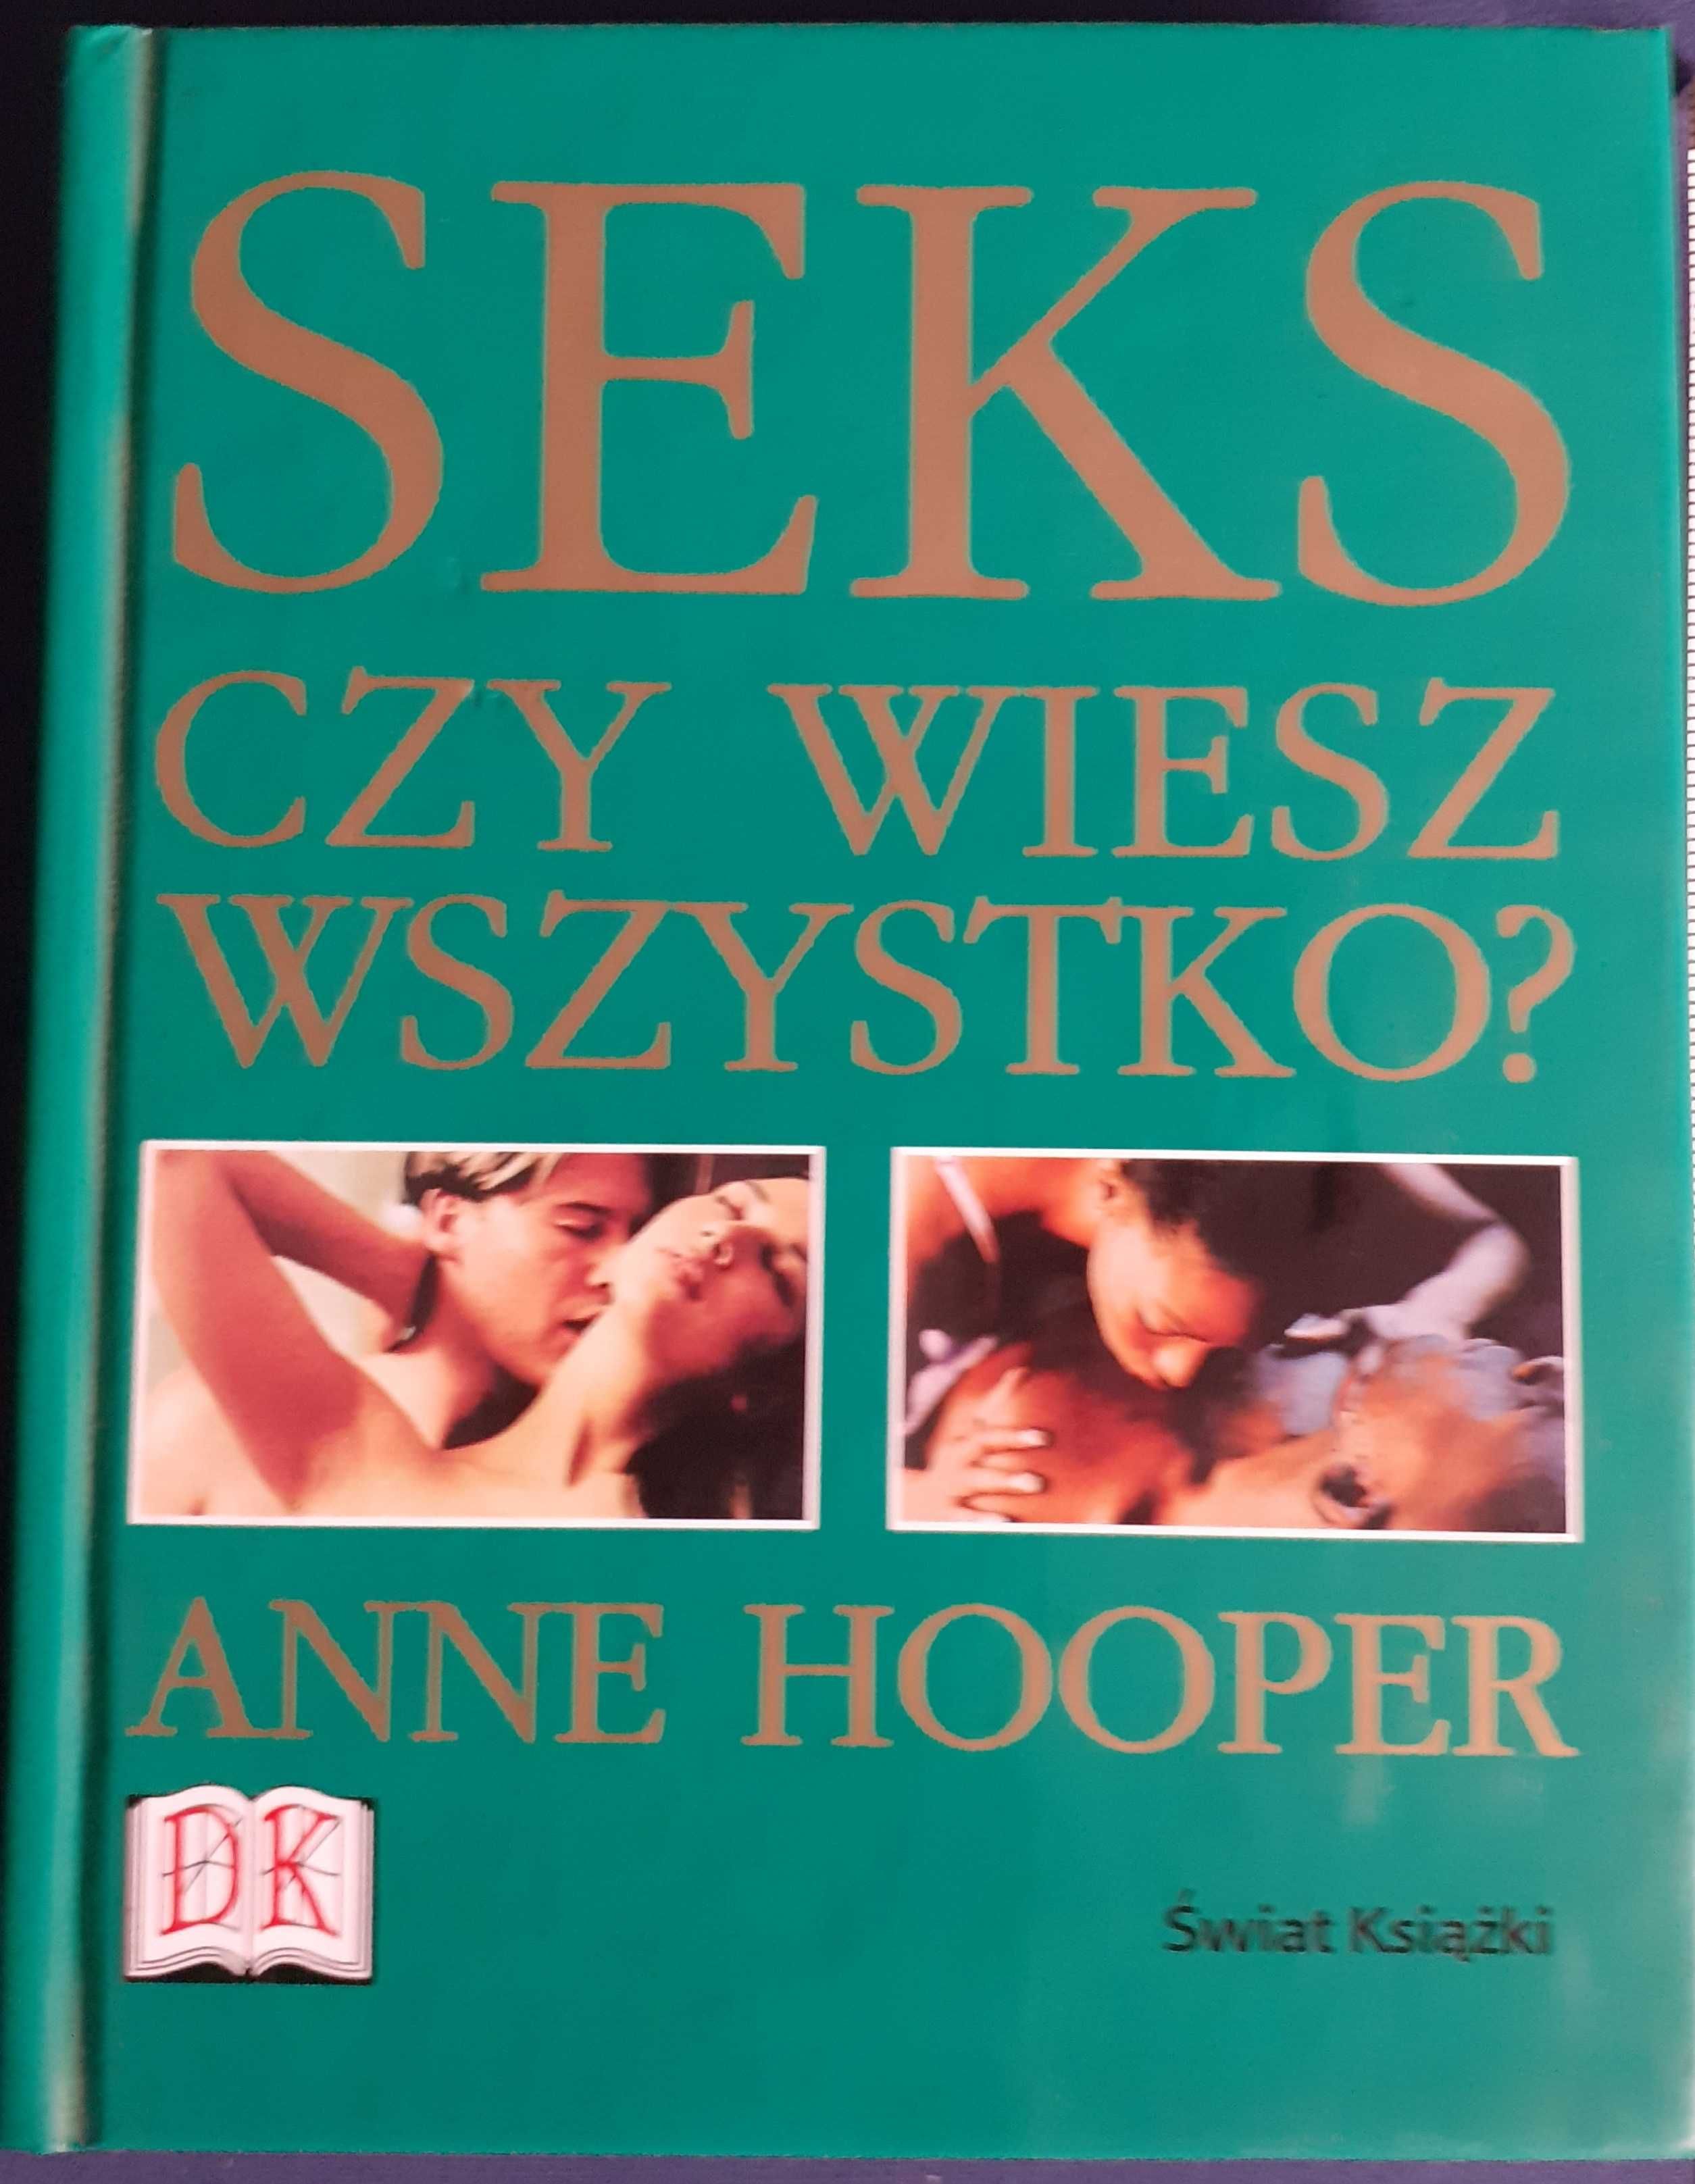 Seks, pomysły na weekend + czy wiesz wszystko - A.Hooper